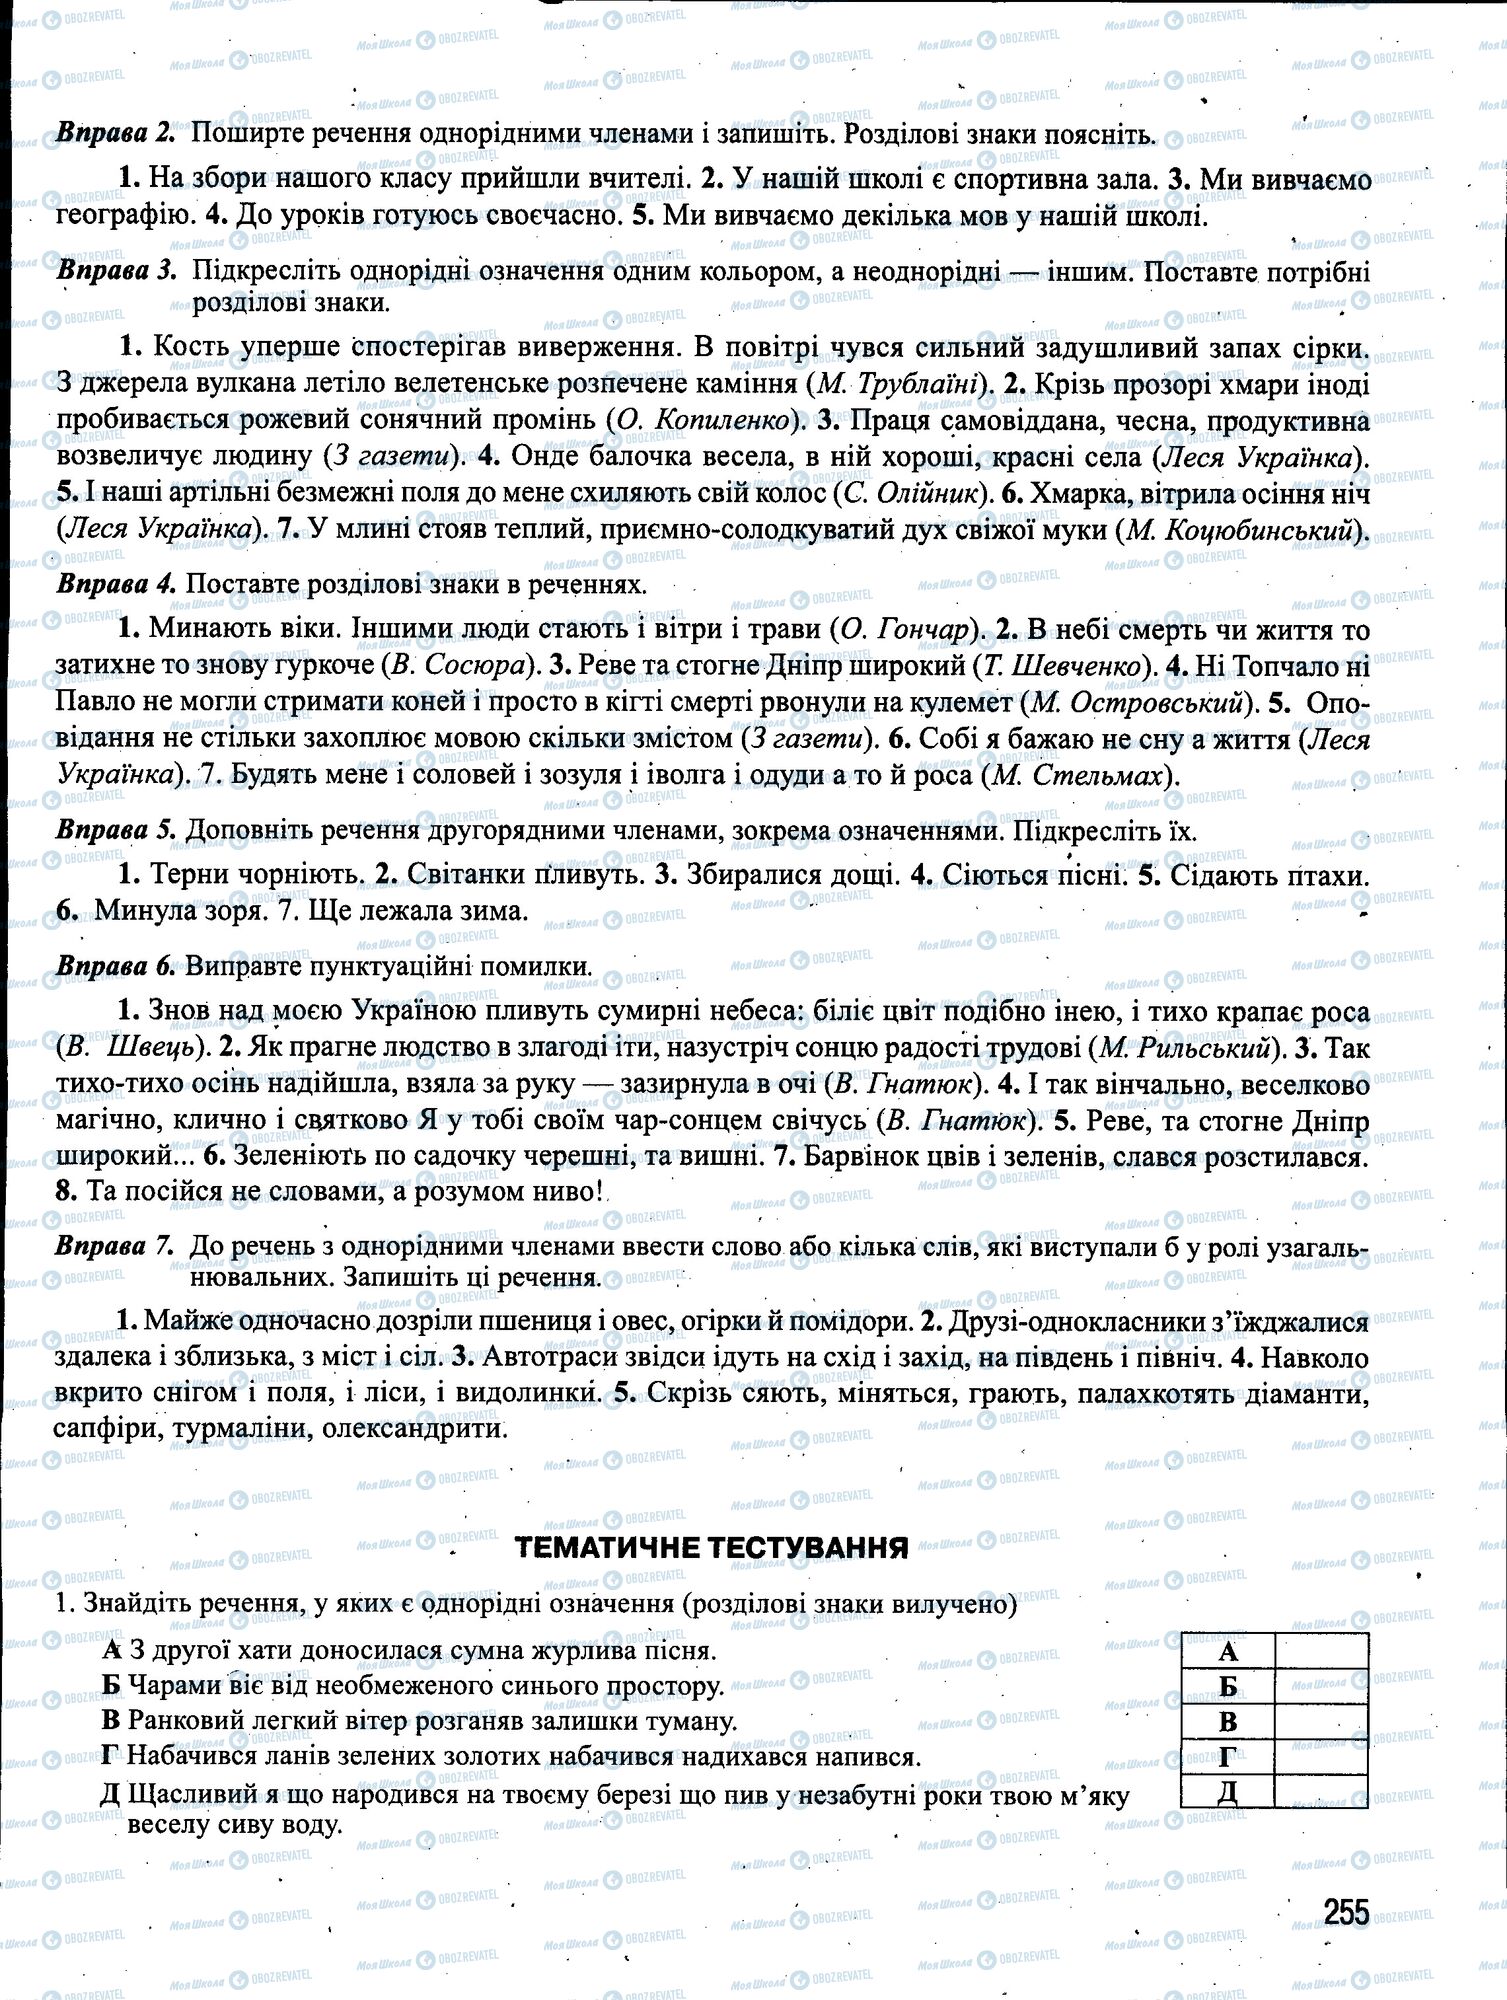 ЗНО Укр мова 11 класс страница 255